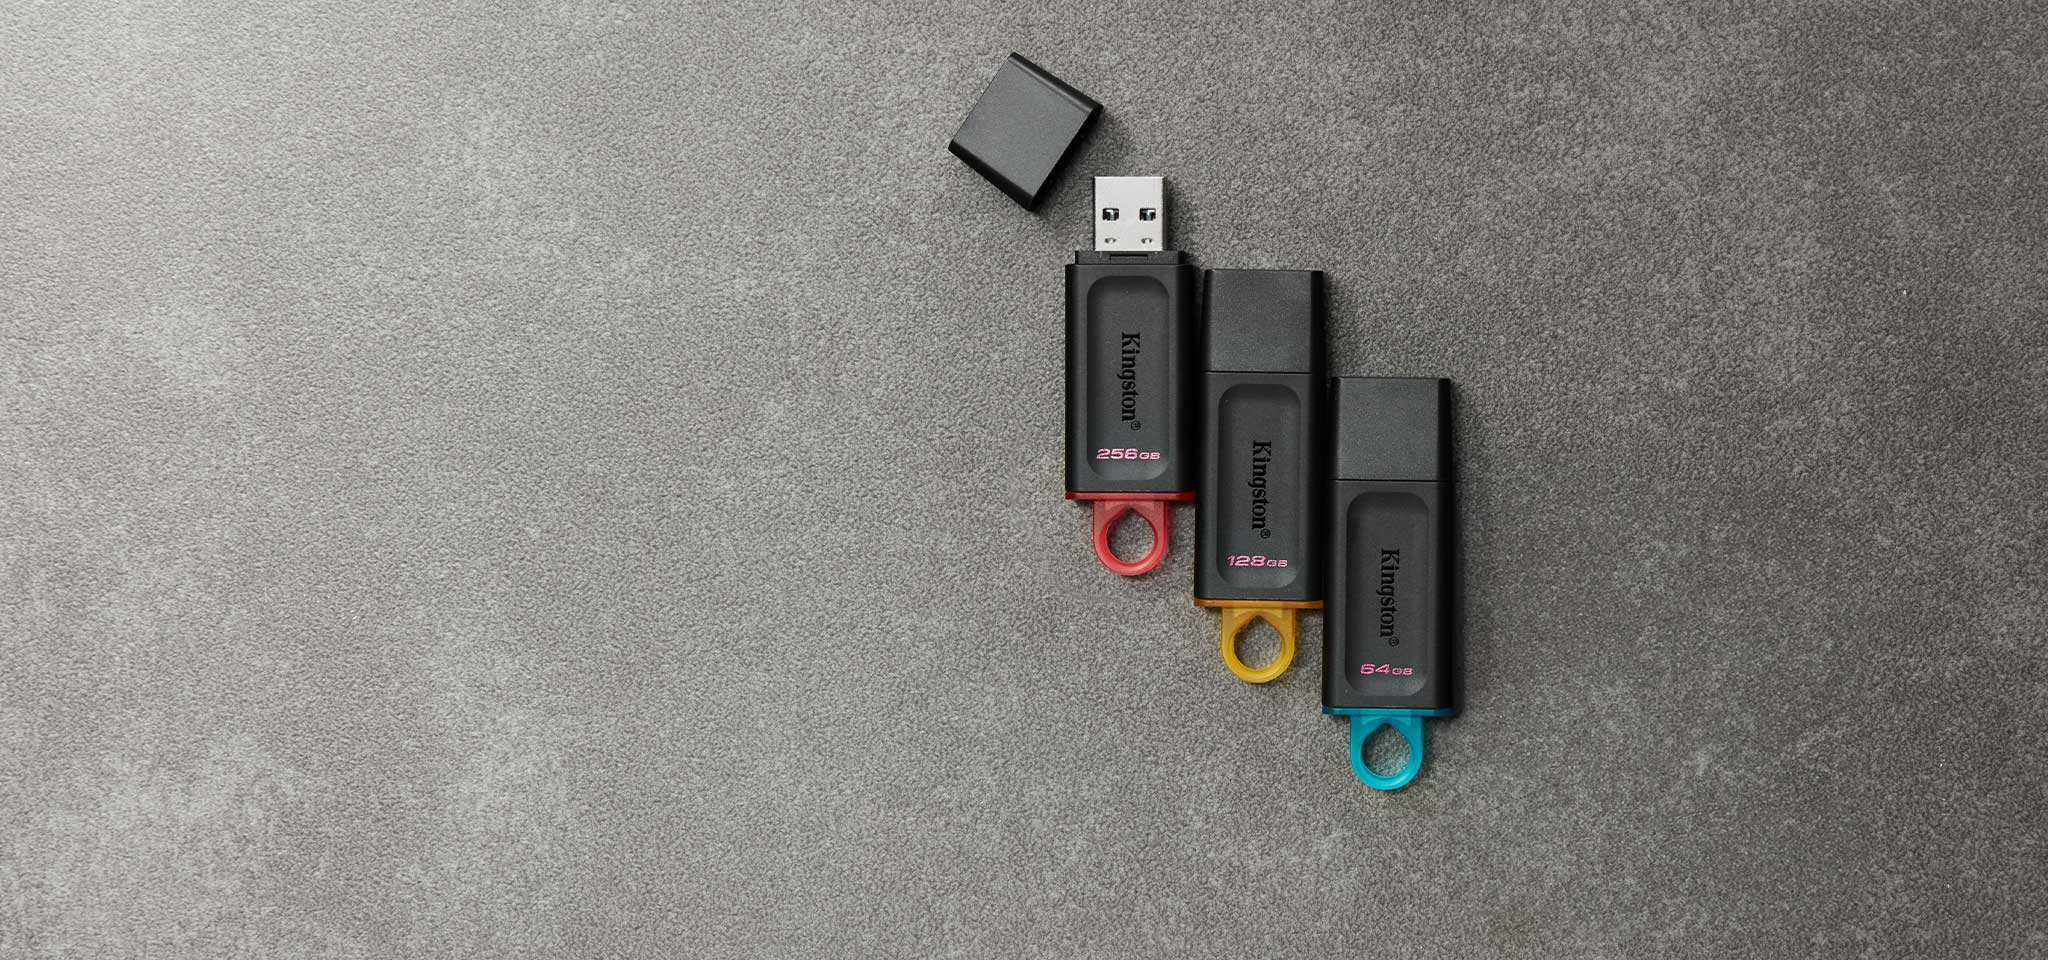 Vista aérea de cuatro unidades flash USB DT Exodia de distinto color en función de su capacidad sobre una alfombra gris